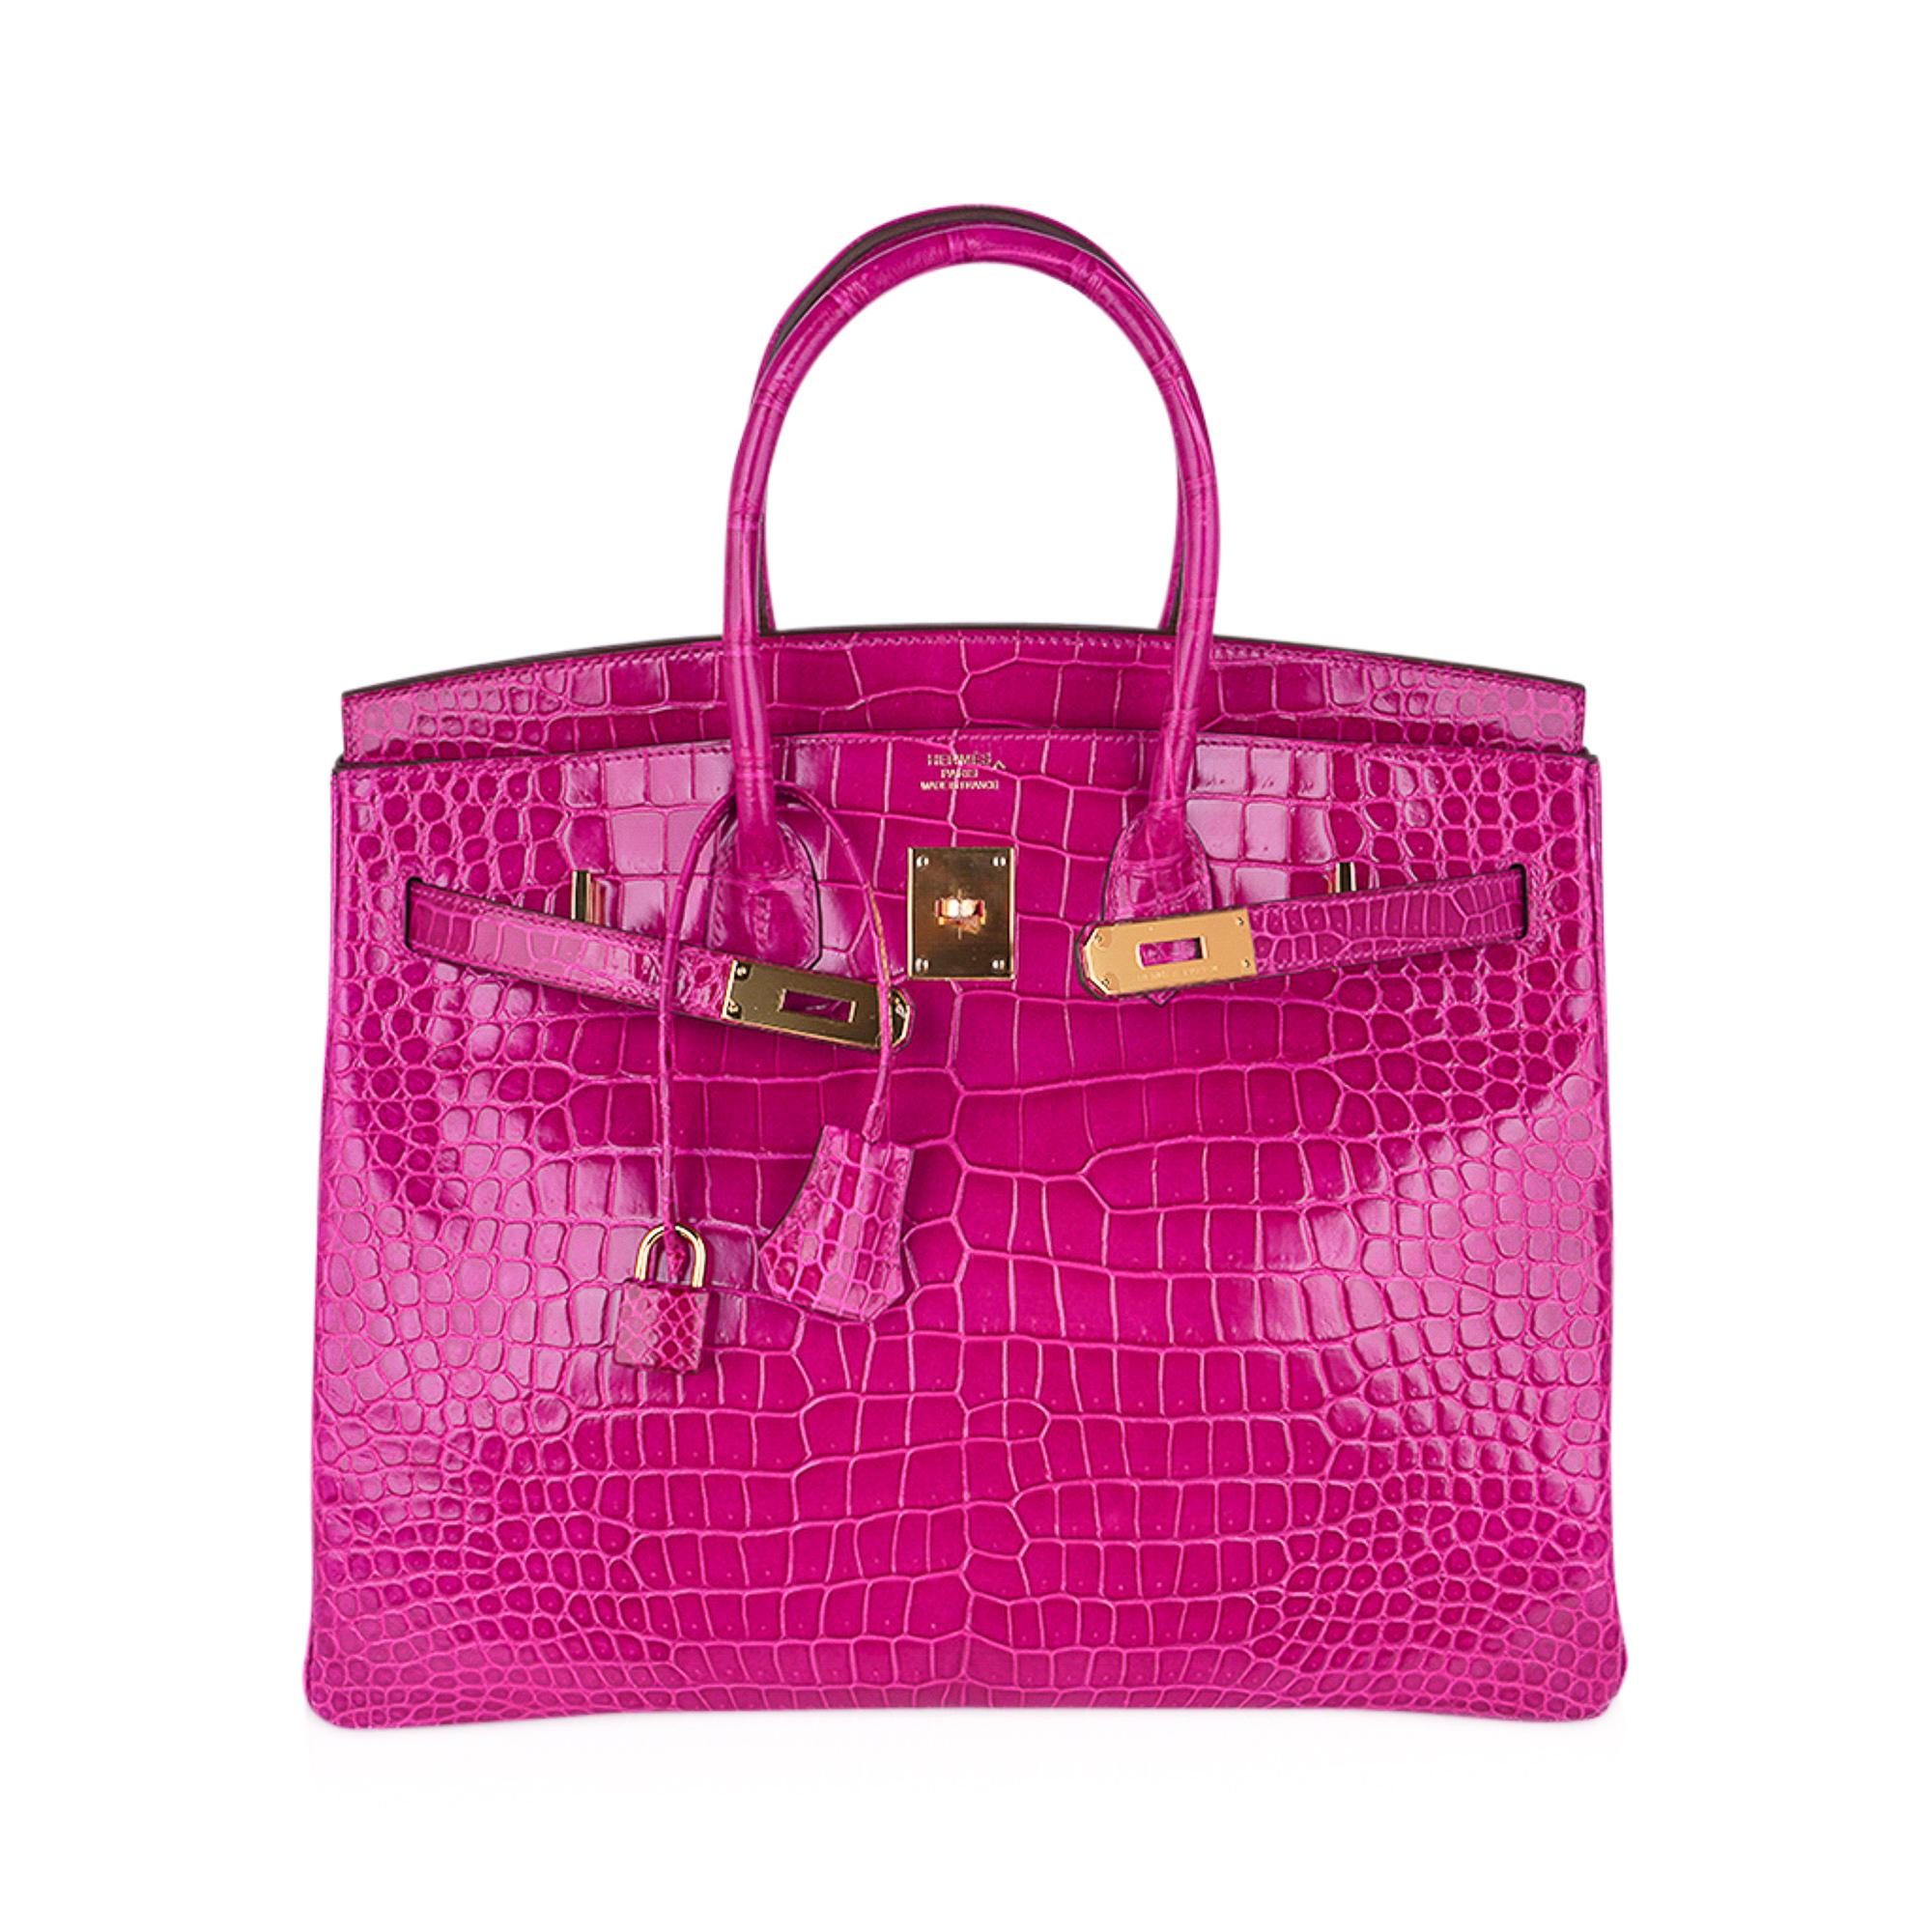 pink hermes bag